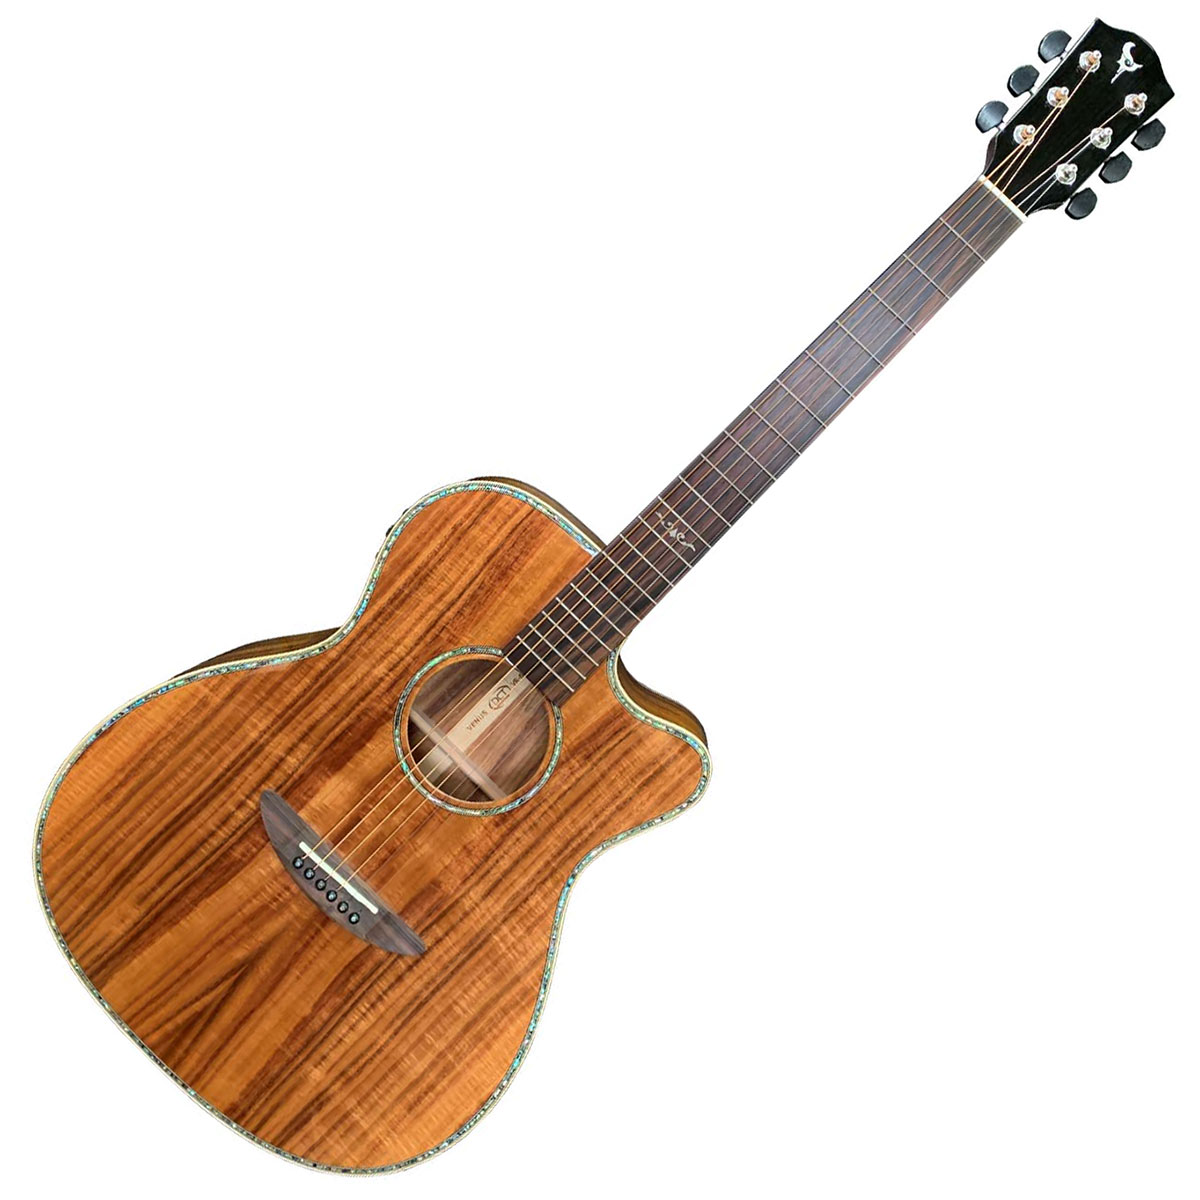 アコースティックギター クラシックギター HOTTA MUSICAL INST モデルNo.150 ボンドによる修理箇所あり |  www.mamesays.com - ギター